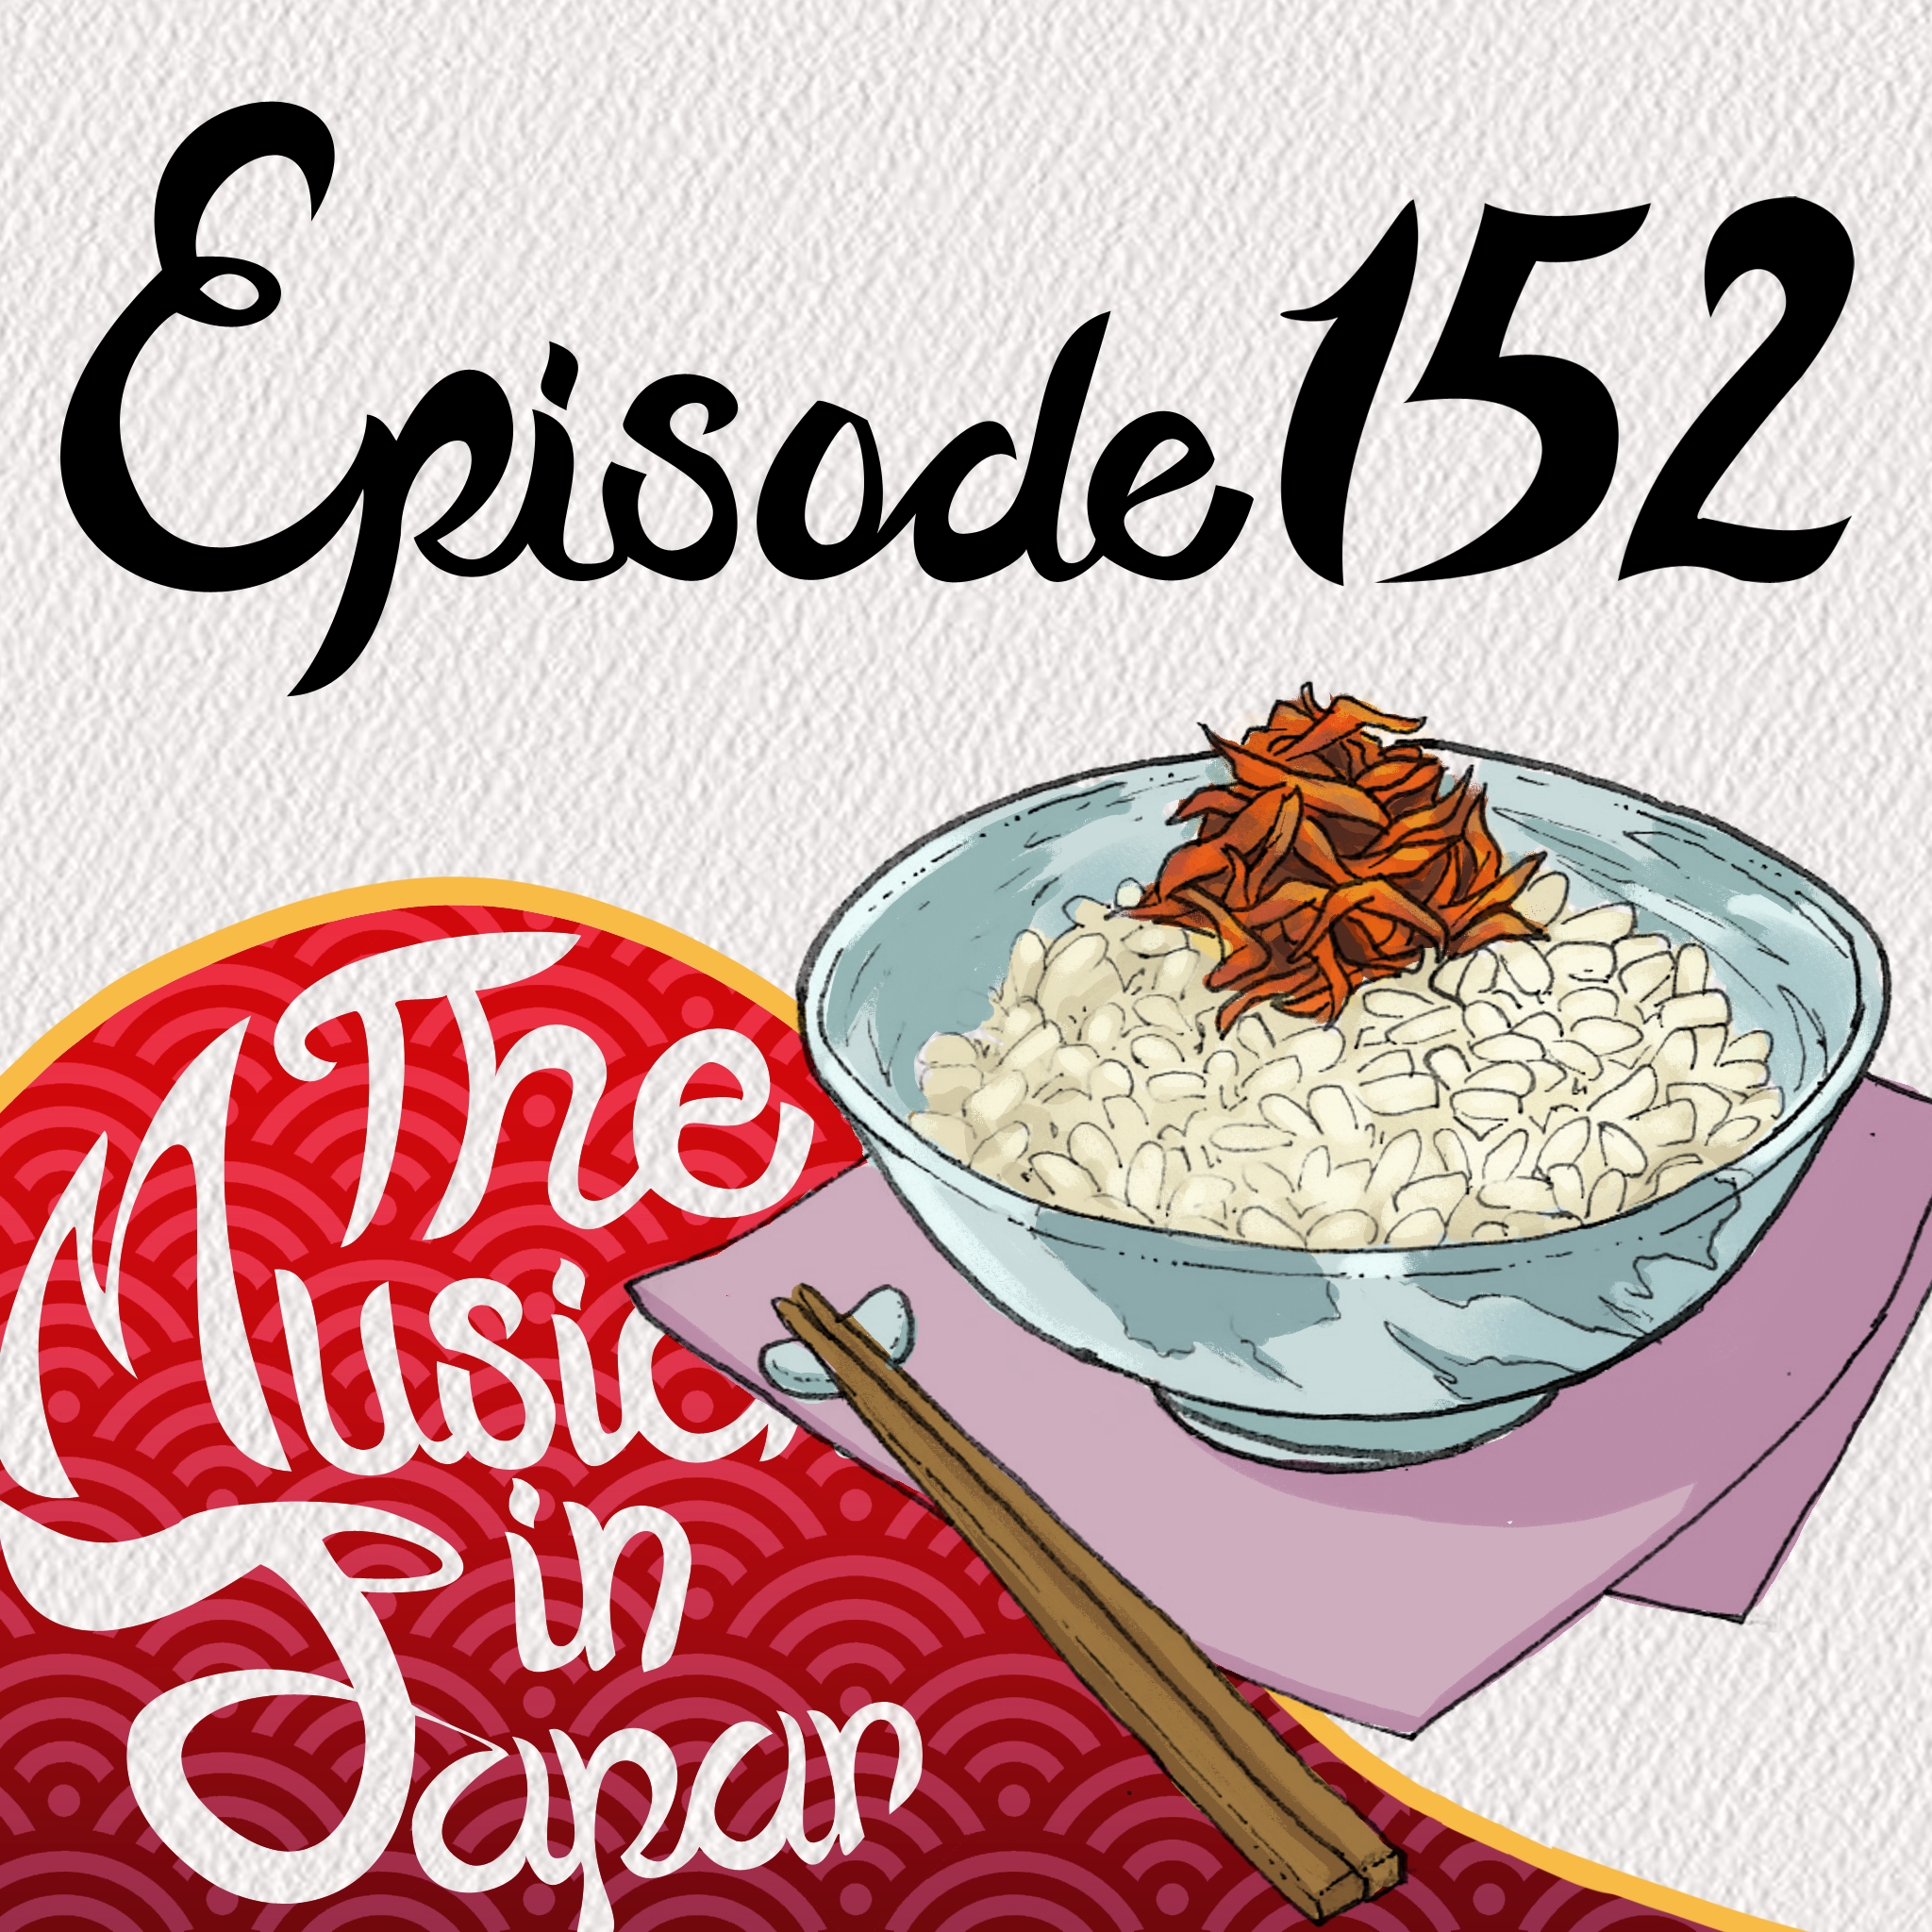 Episode 152: Socializing in Japan vs the US